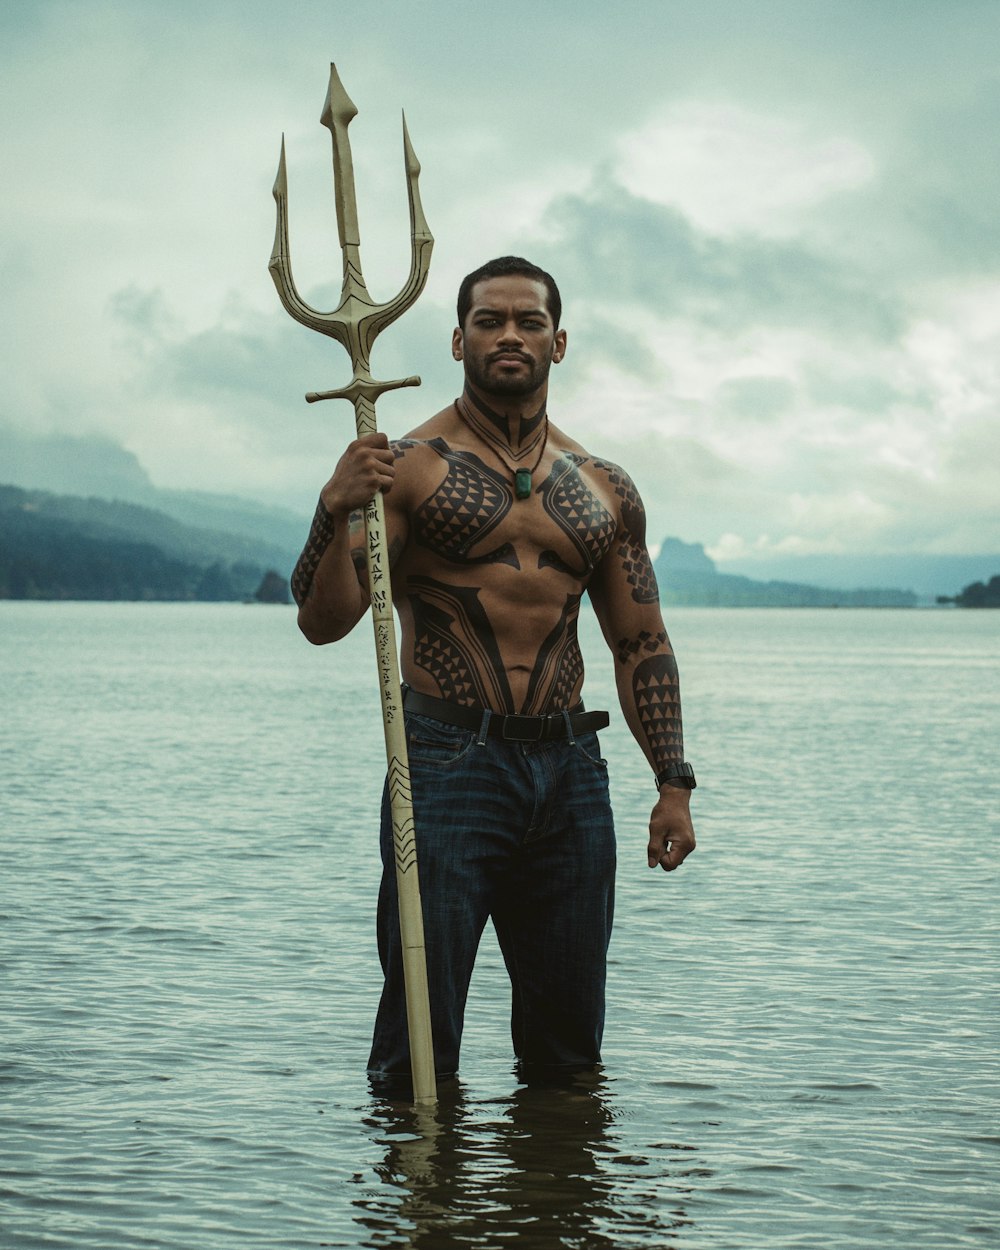 Un hombre parado en el agua sosteniendo una gran lanza